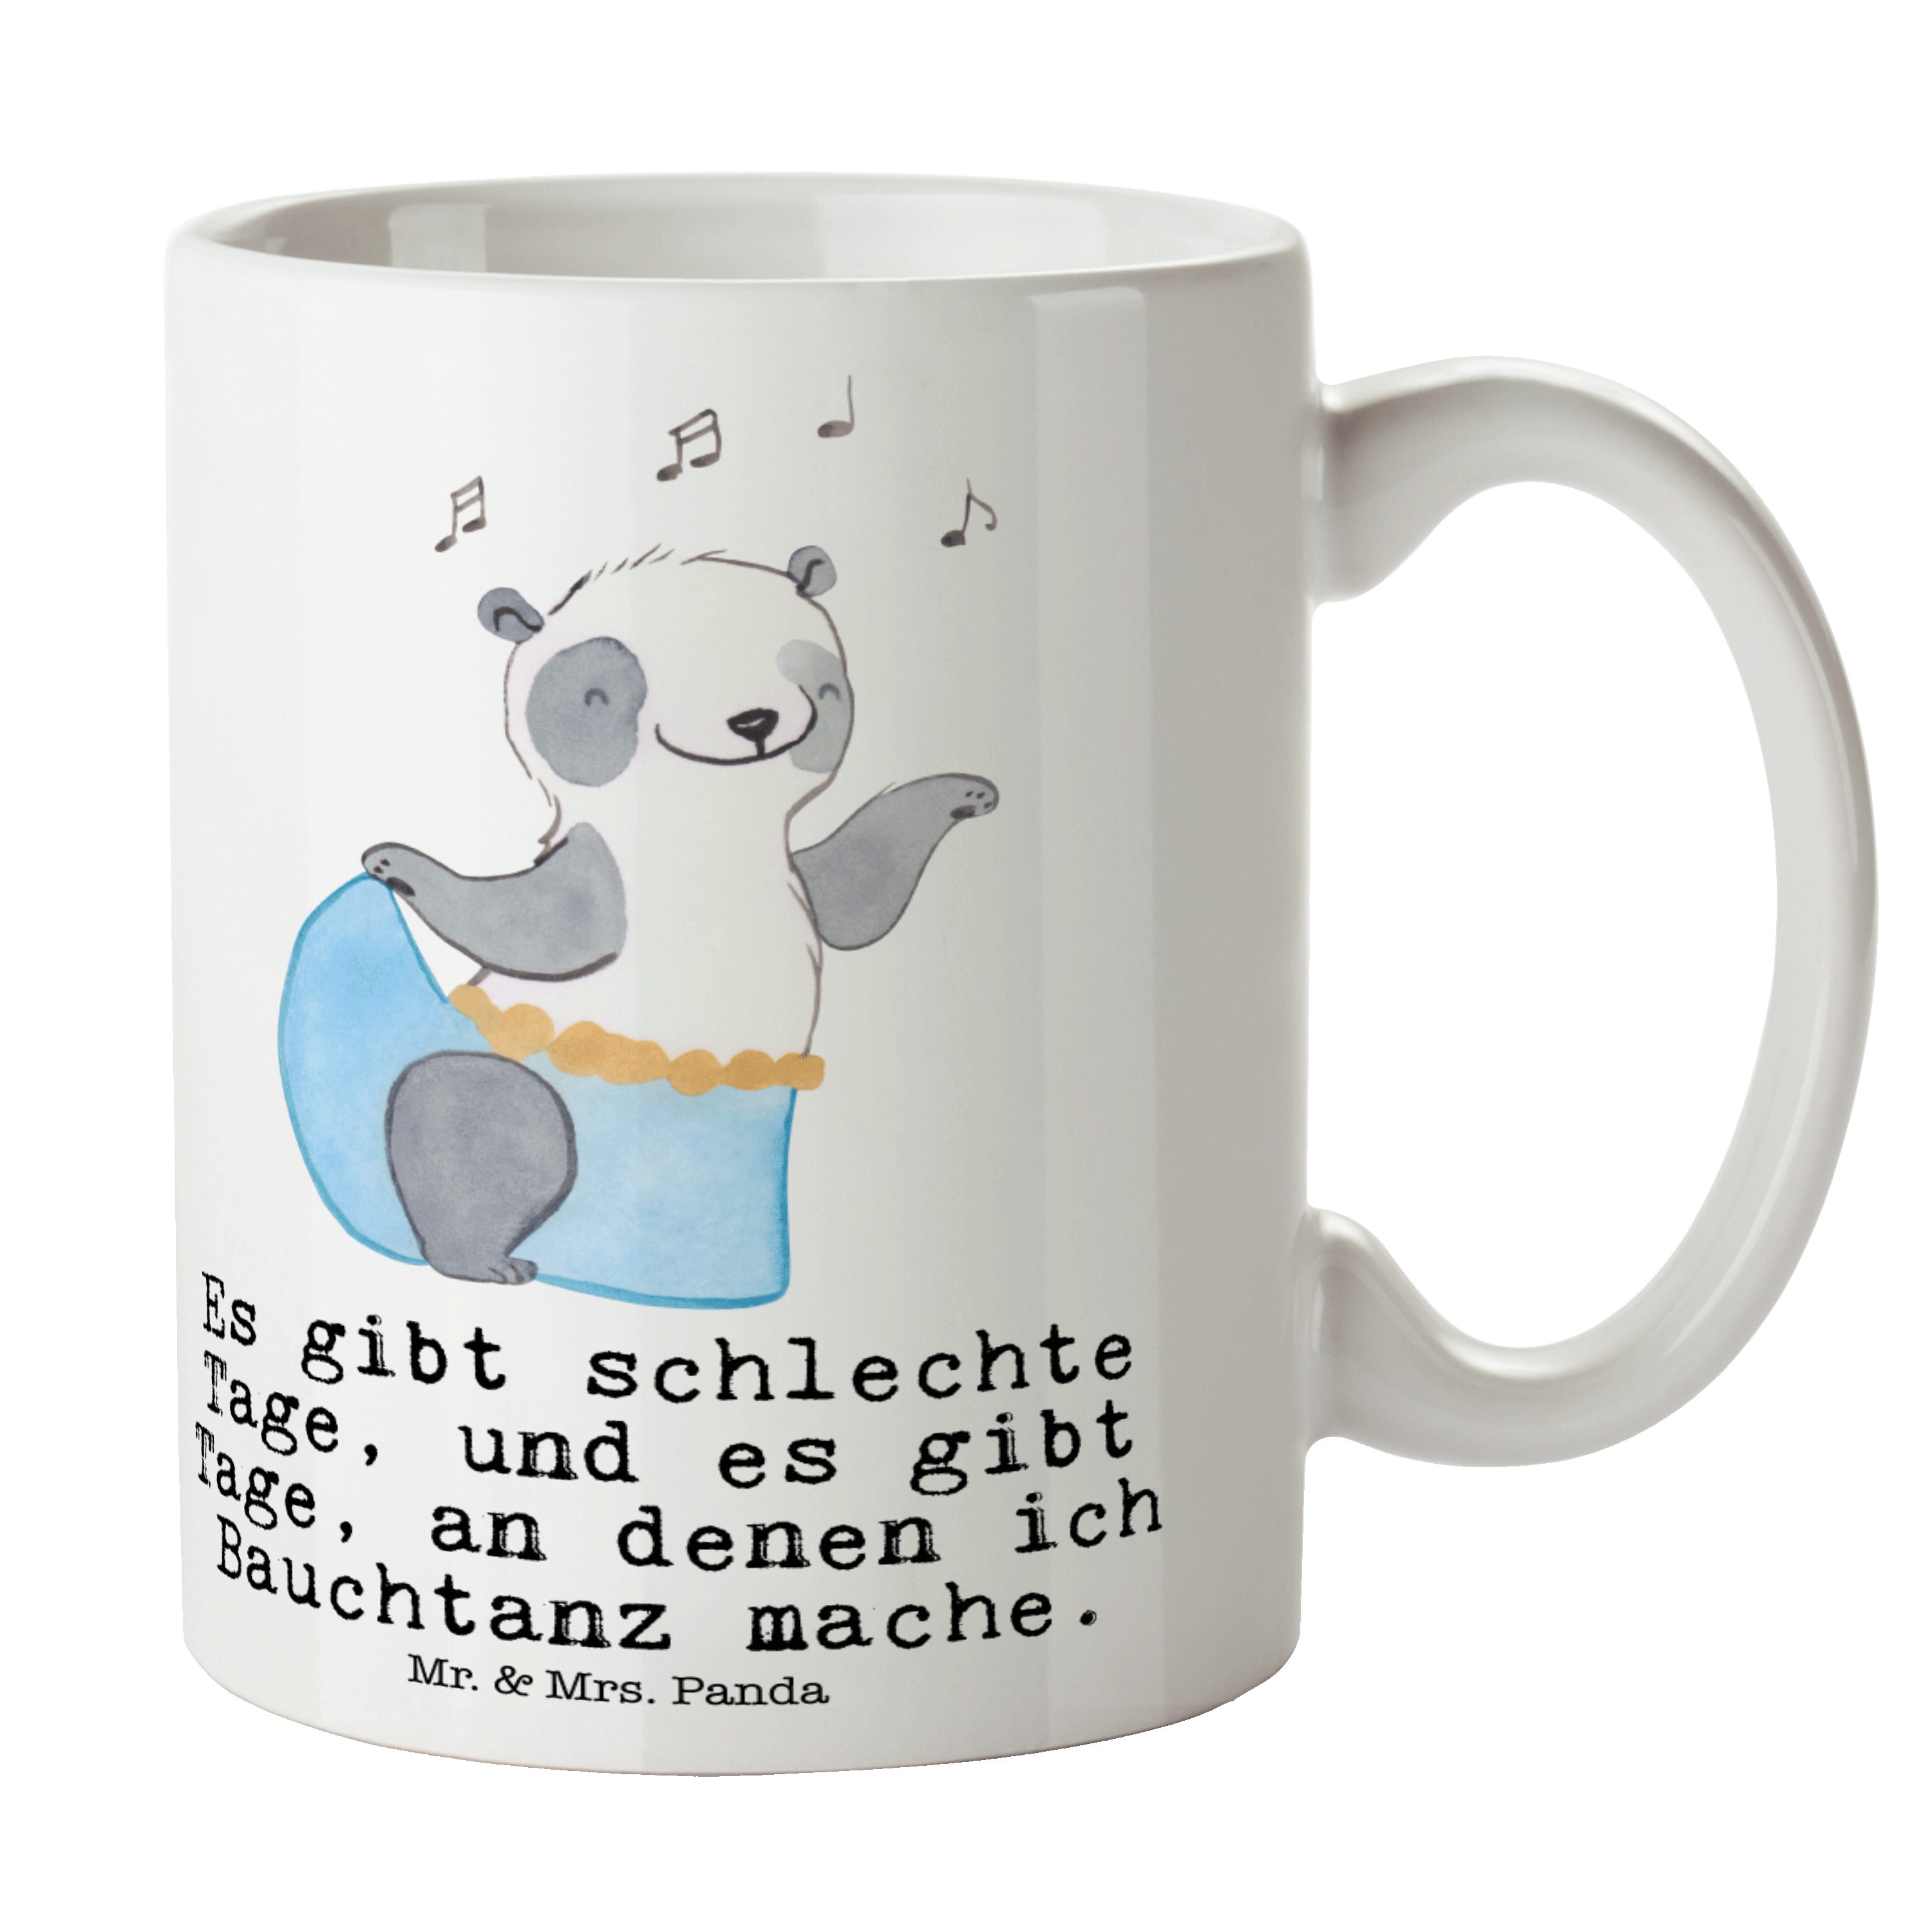 Mr. & Mrs. Panda Tasse Panda Bauchtanz Tage - Weiß - Geschenk, Becher, Tasse, Teebecher, ori, Keramik